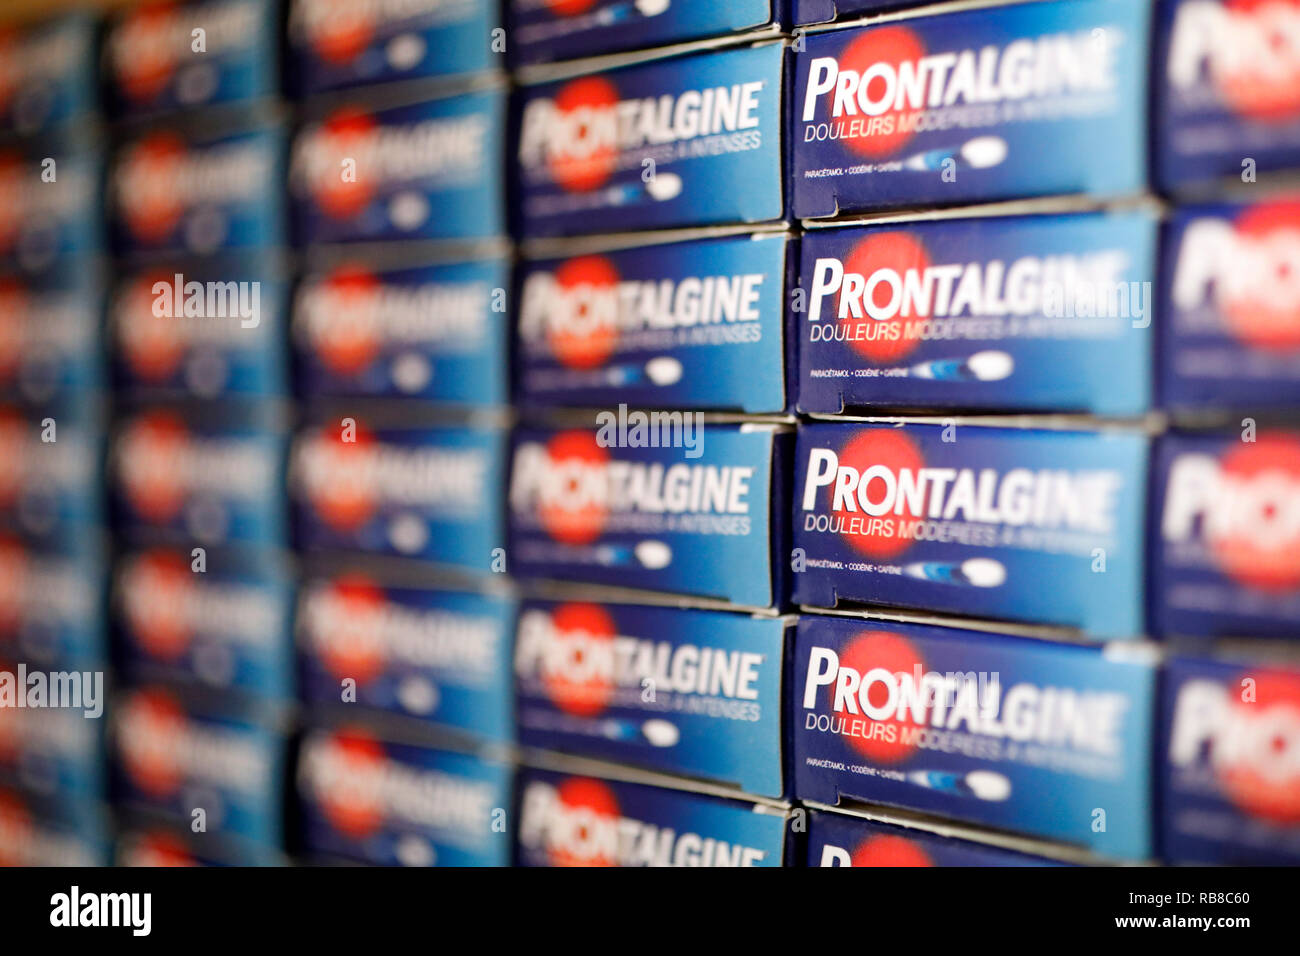 Farmacia. Medicina in scaffali. Antidolorifici Prontalgine. La Francia. Foto Stock